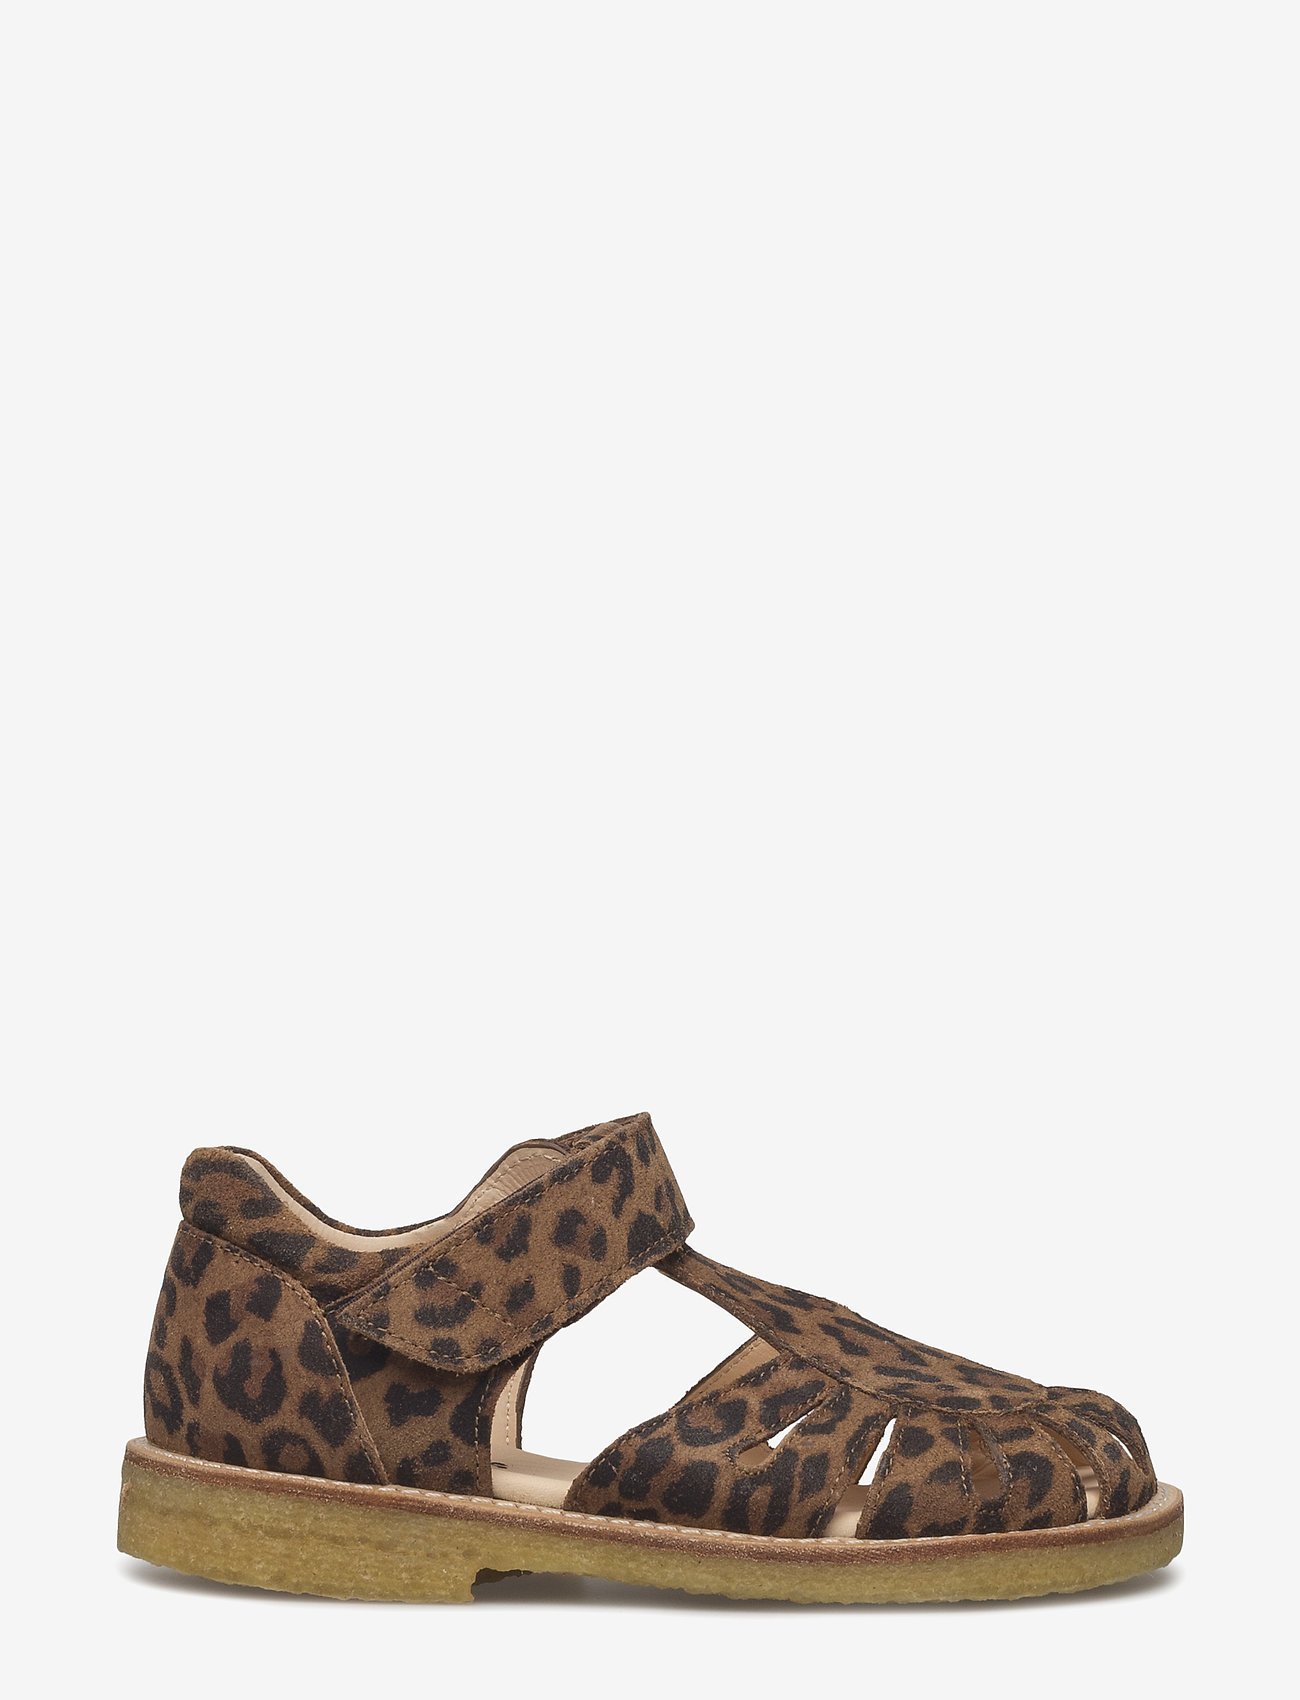 ANGULUS - Sandals - flat - closed toe -  - sandales à brides - 2164 leopard - 1